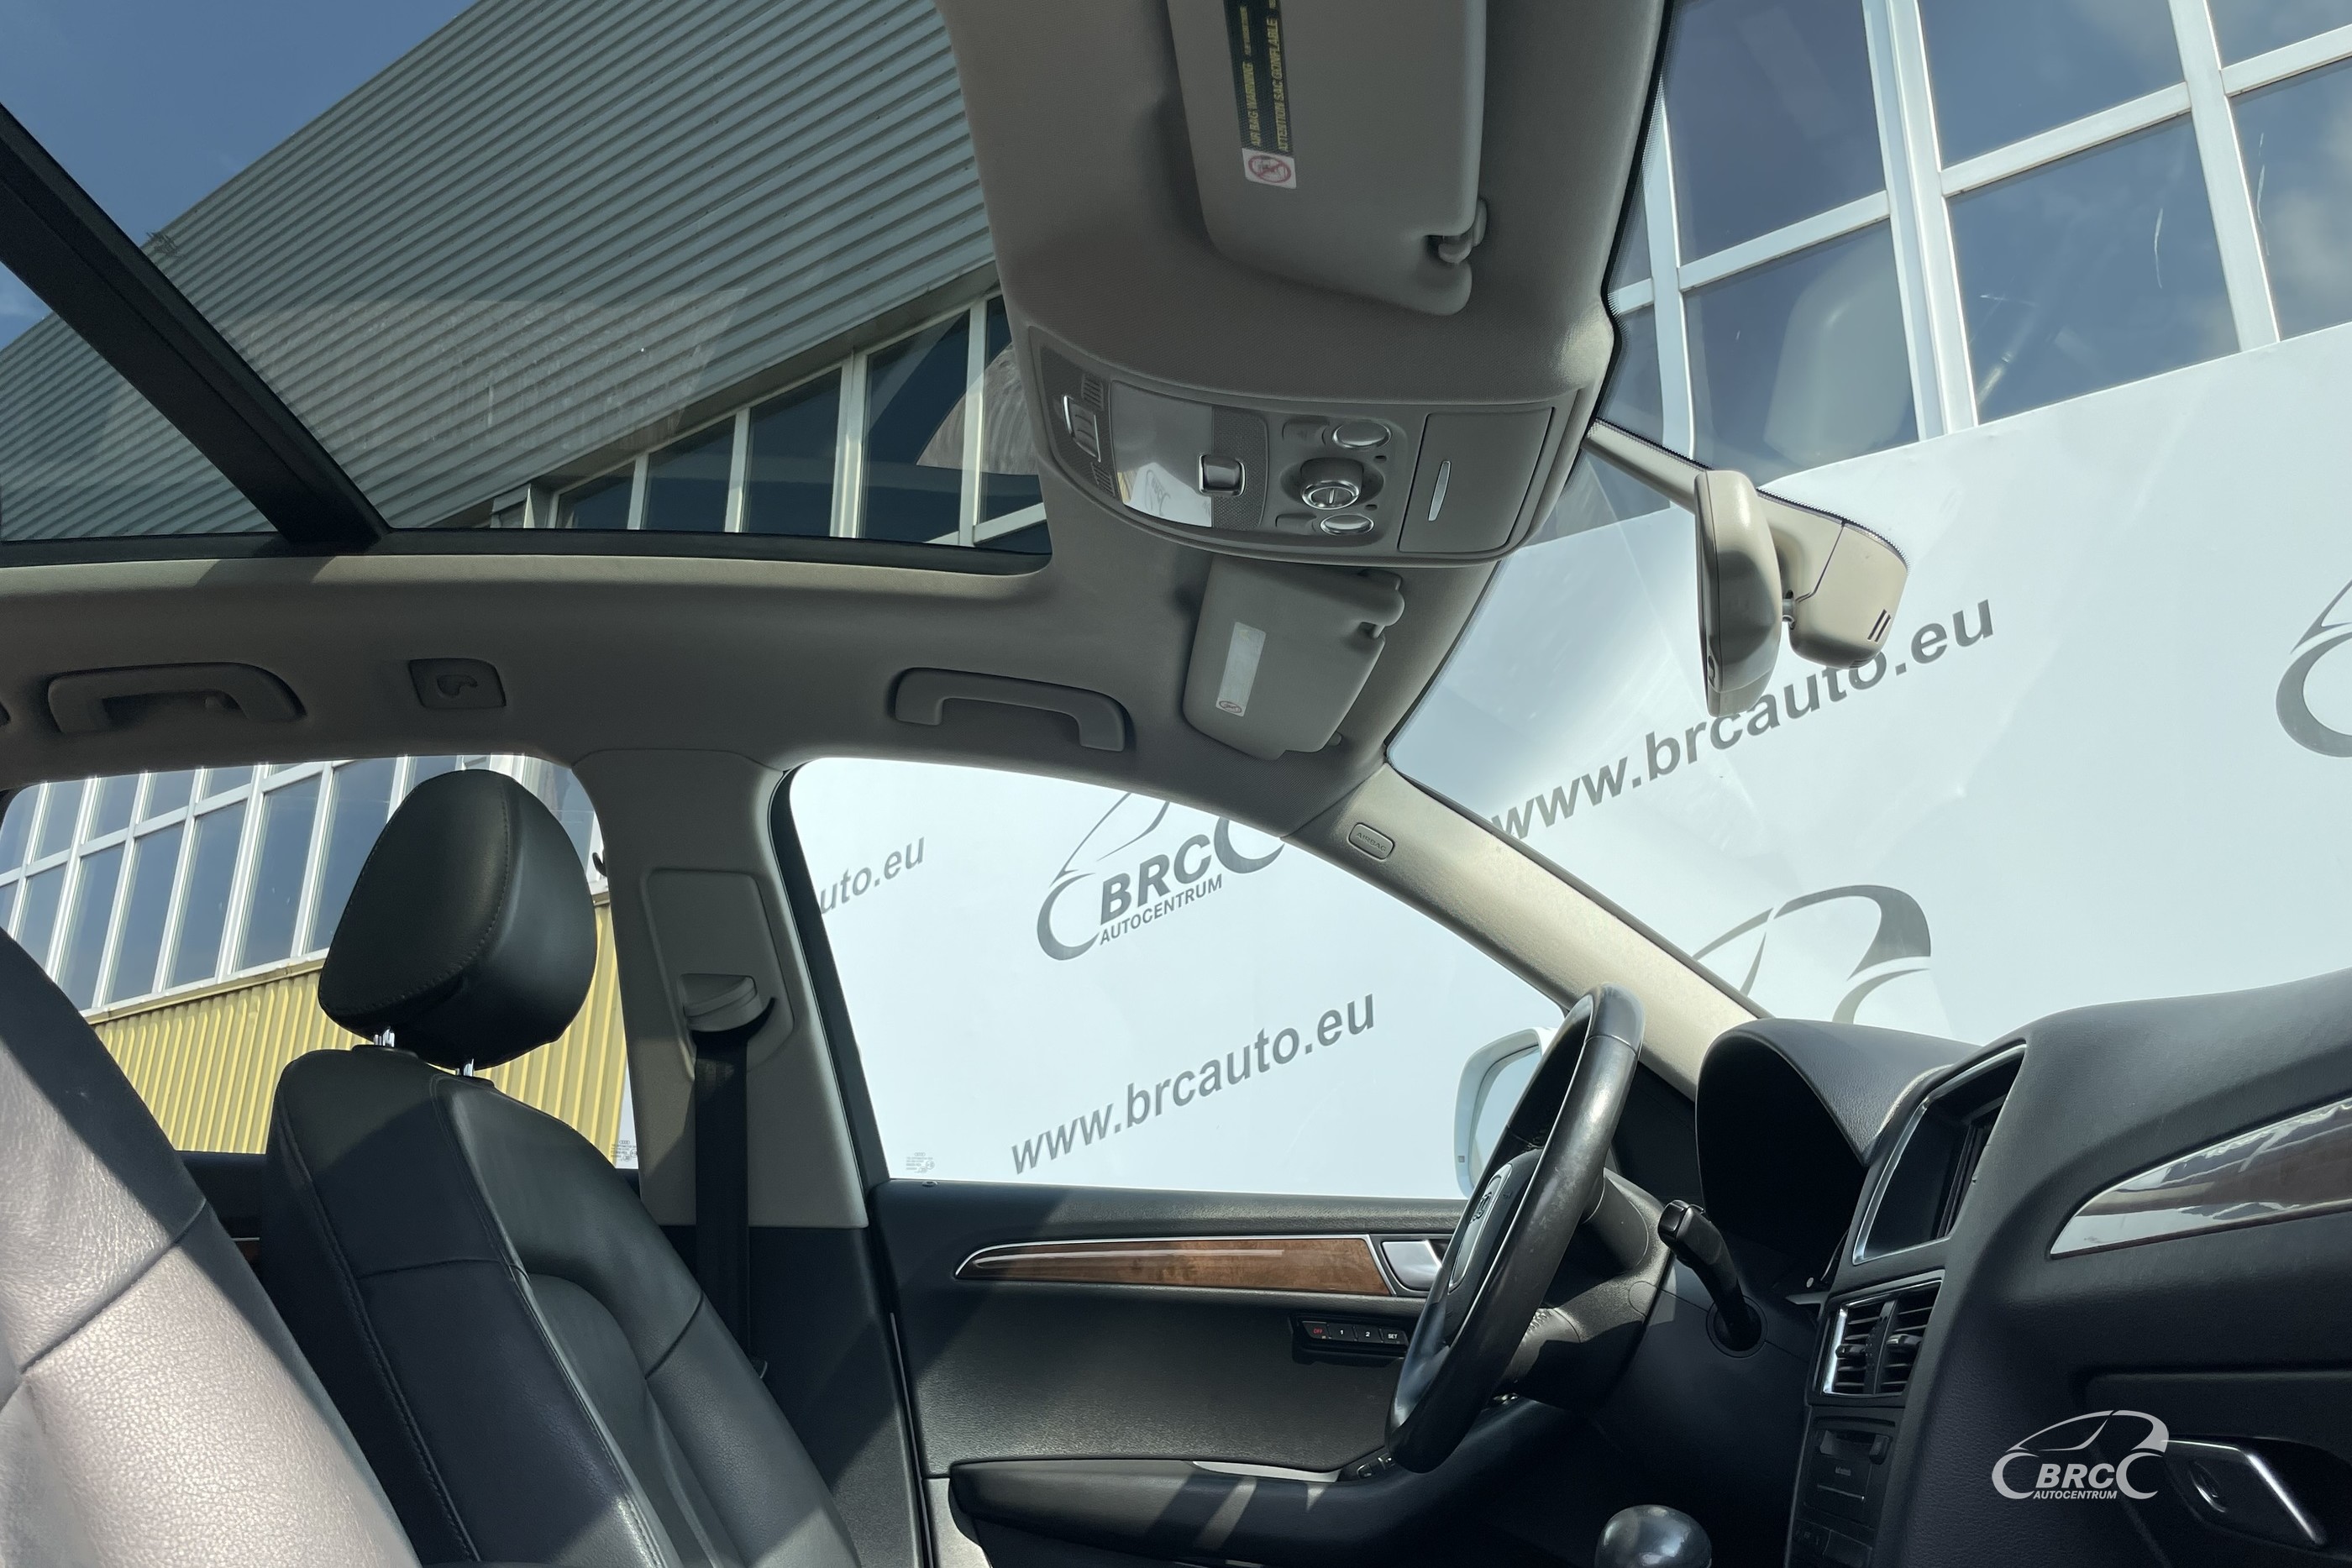 Audi Q5 3.2 FSI Quattro Automatas